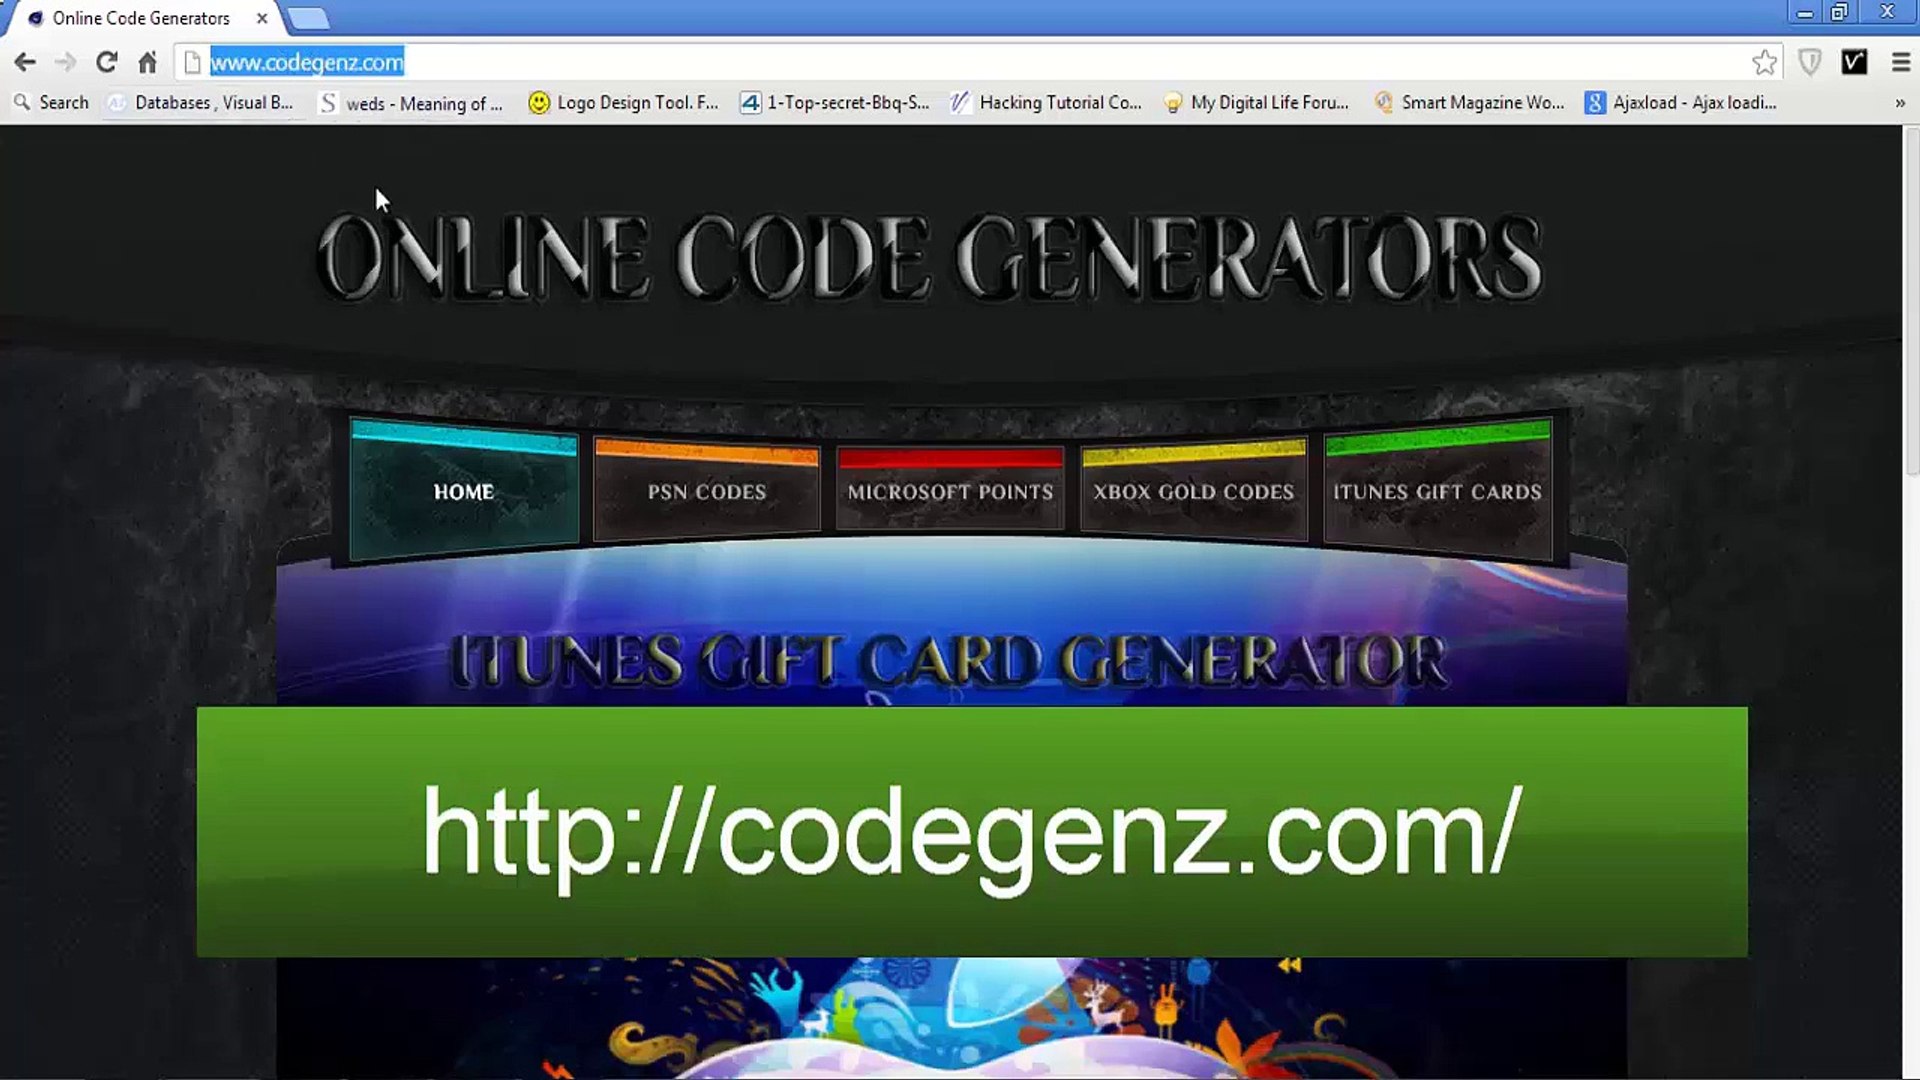 Abonnement Xbox Live Gold Code Gratuit | Code Xbox Live Gold gratuit  Generateur 2015 - video Dailymotion